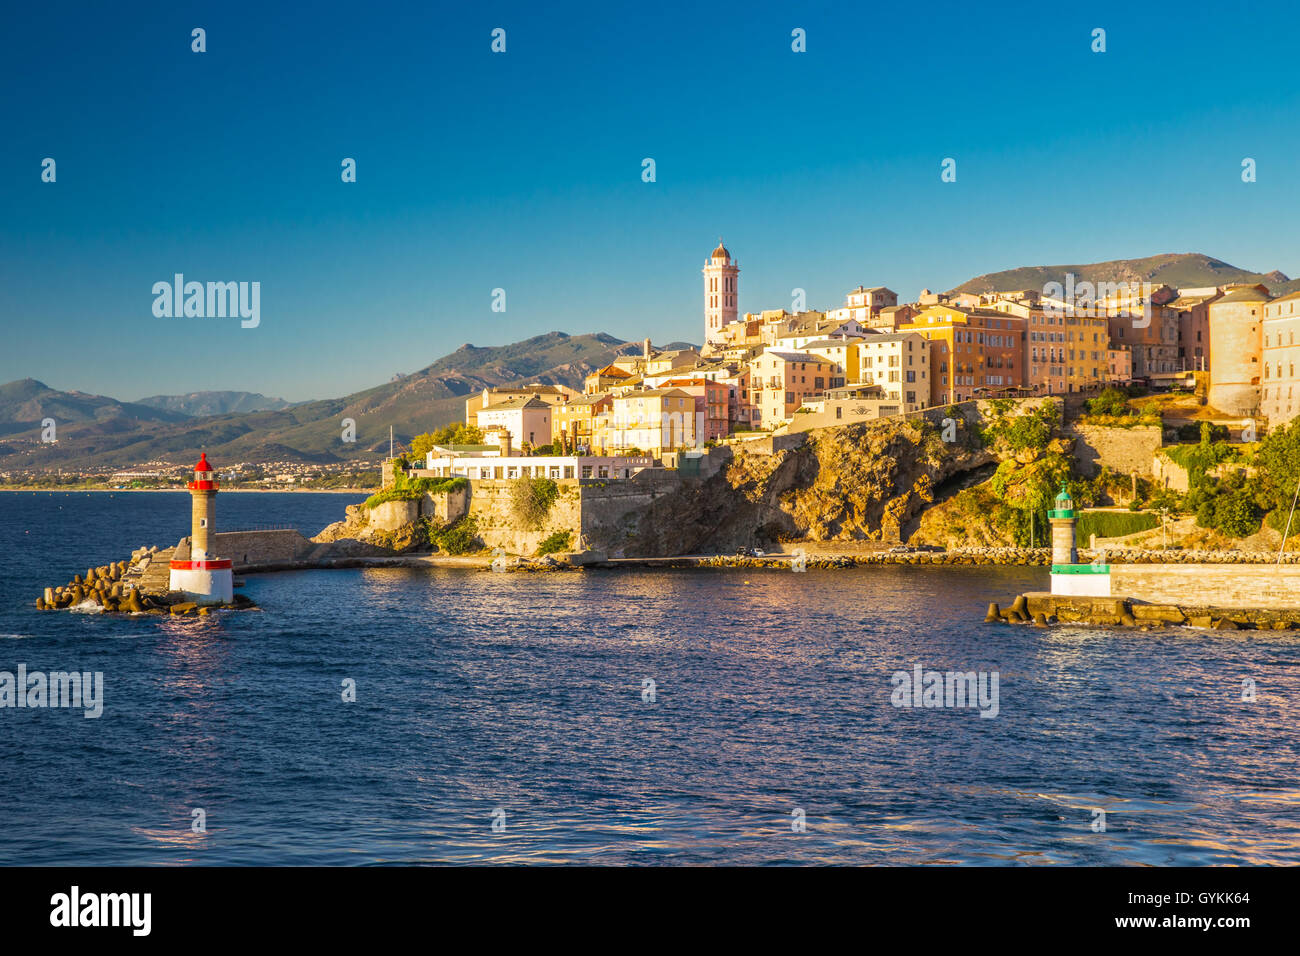 Blick auf die Altstadt von Bastia, Leuchtturm und Hafen. Bastia ist an zweiter Stelle größte Stadt auf Korsika, Frankreich. Stockfoto